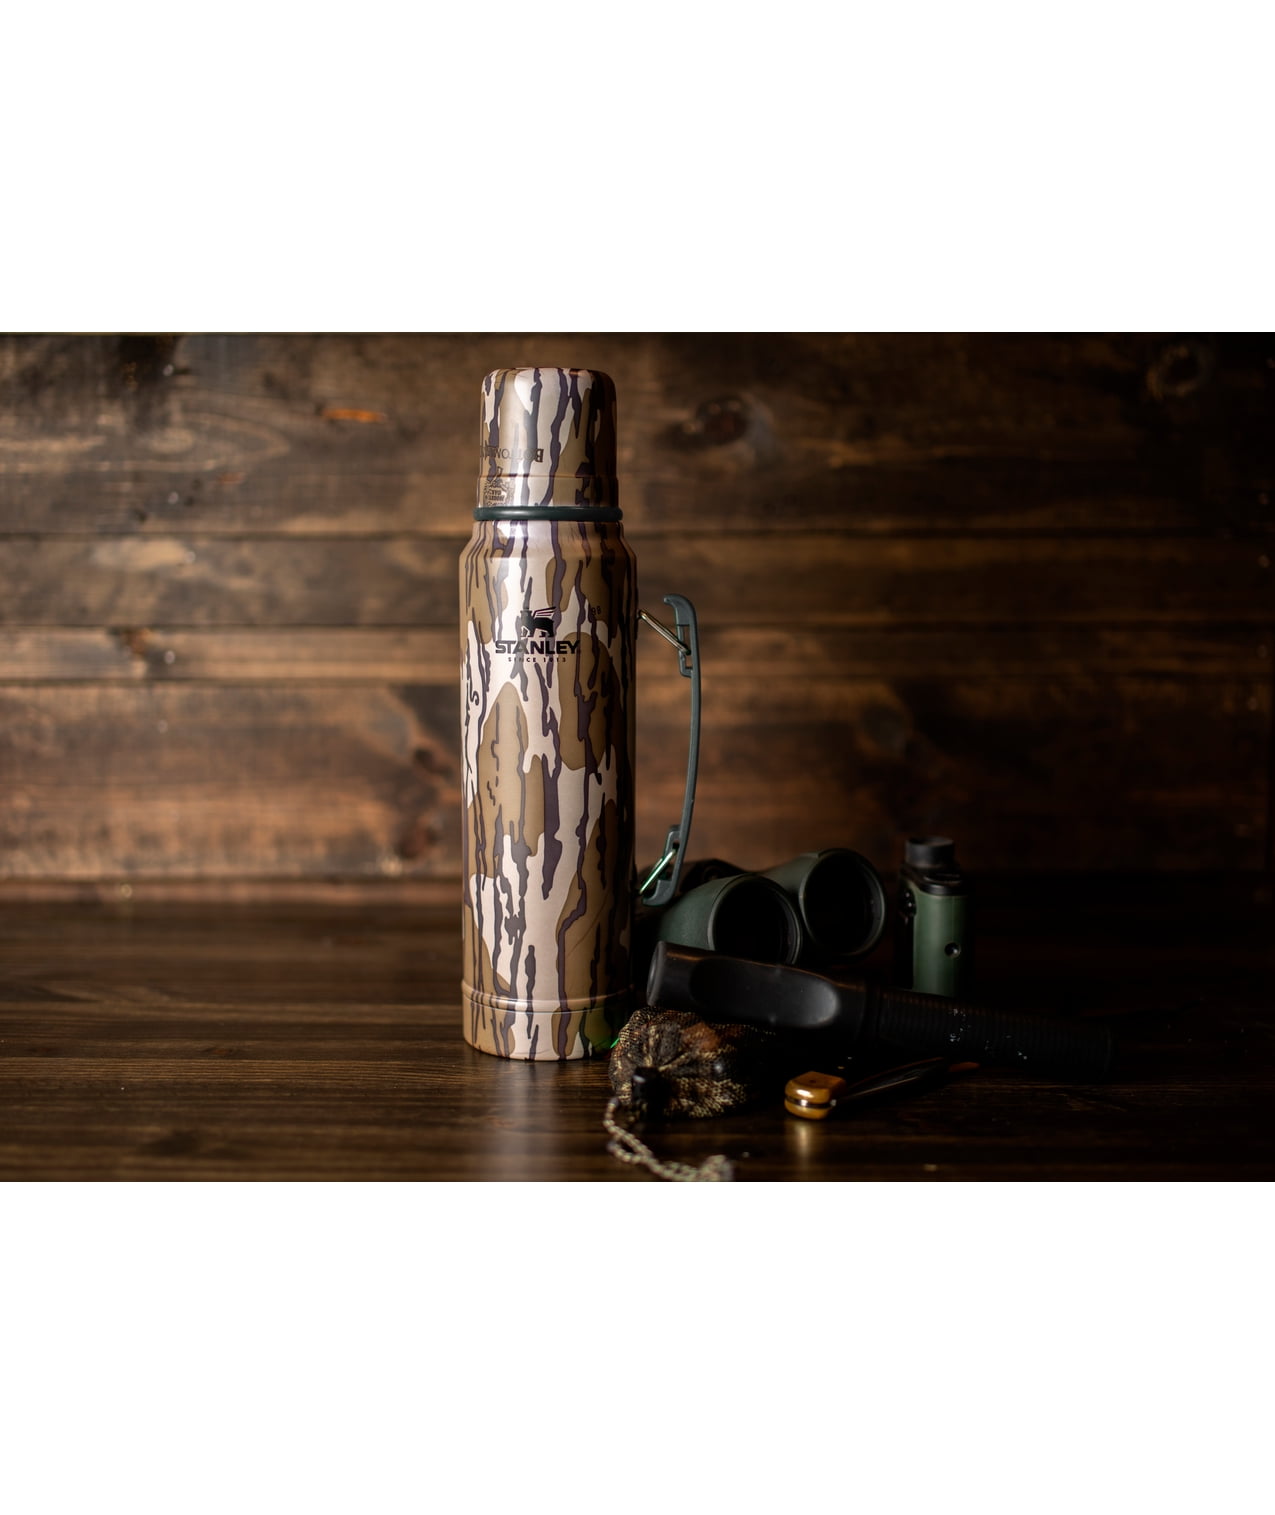 Cheap ✨ Stanley Heritage Classic Bottle, Brook Trout, 1.1 QT ❤️